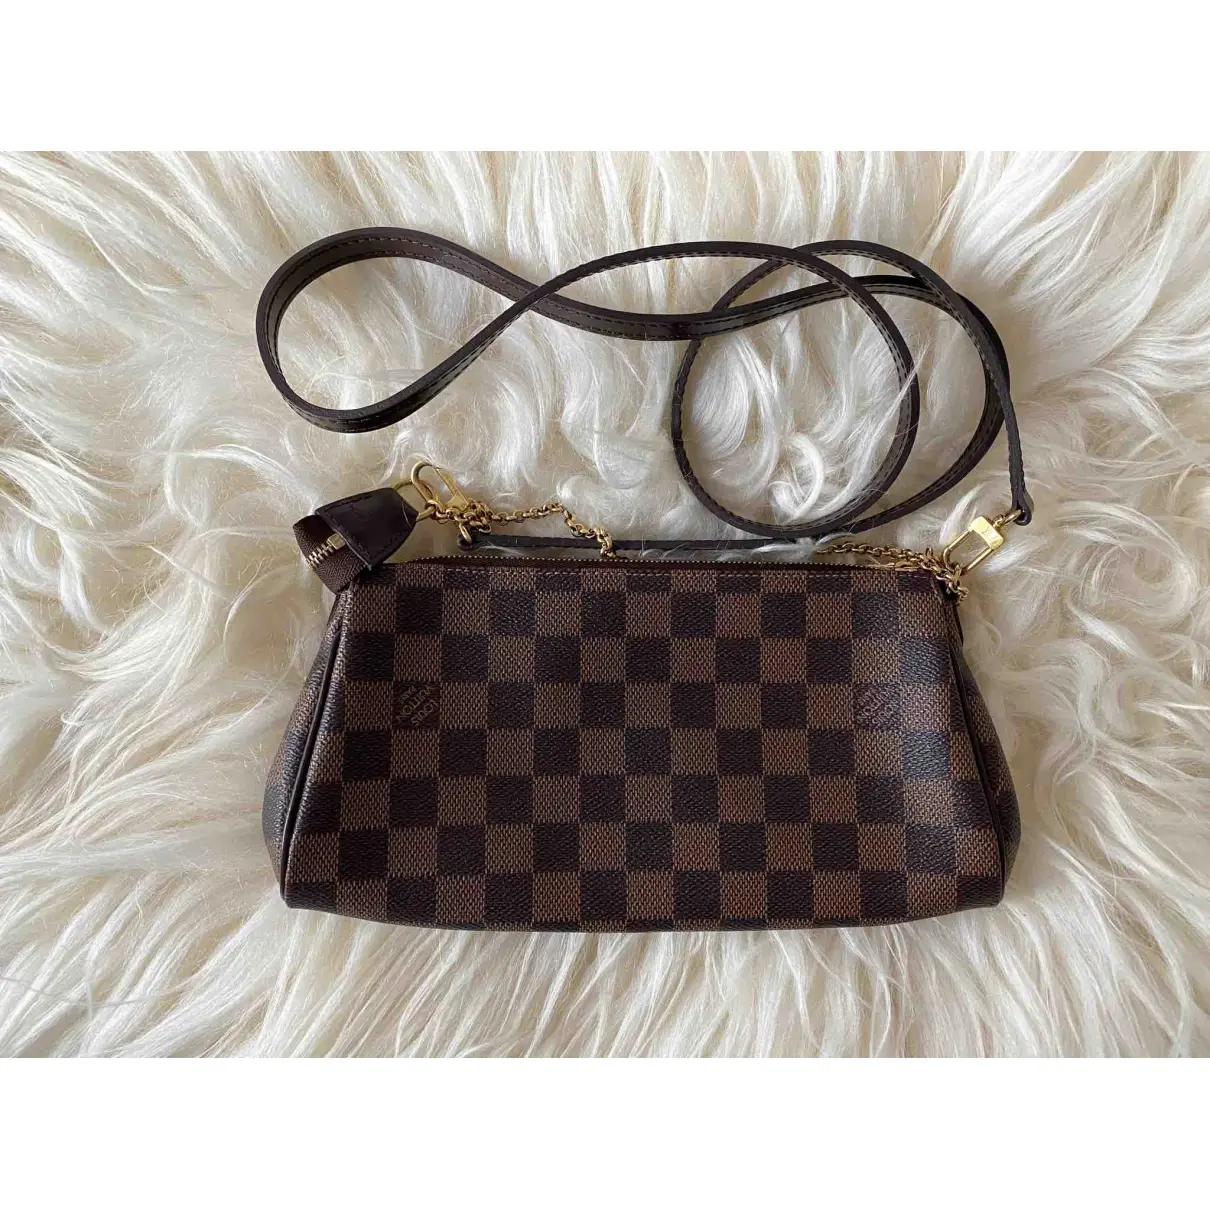 Eva cloth handbag Louis Vuitton